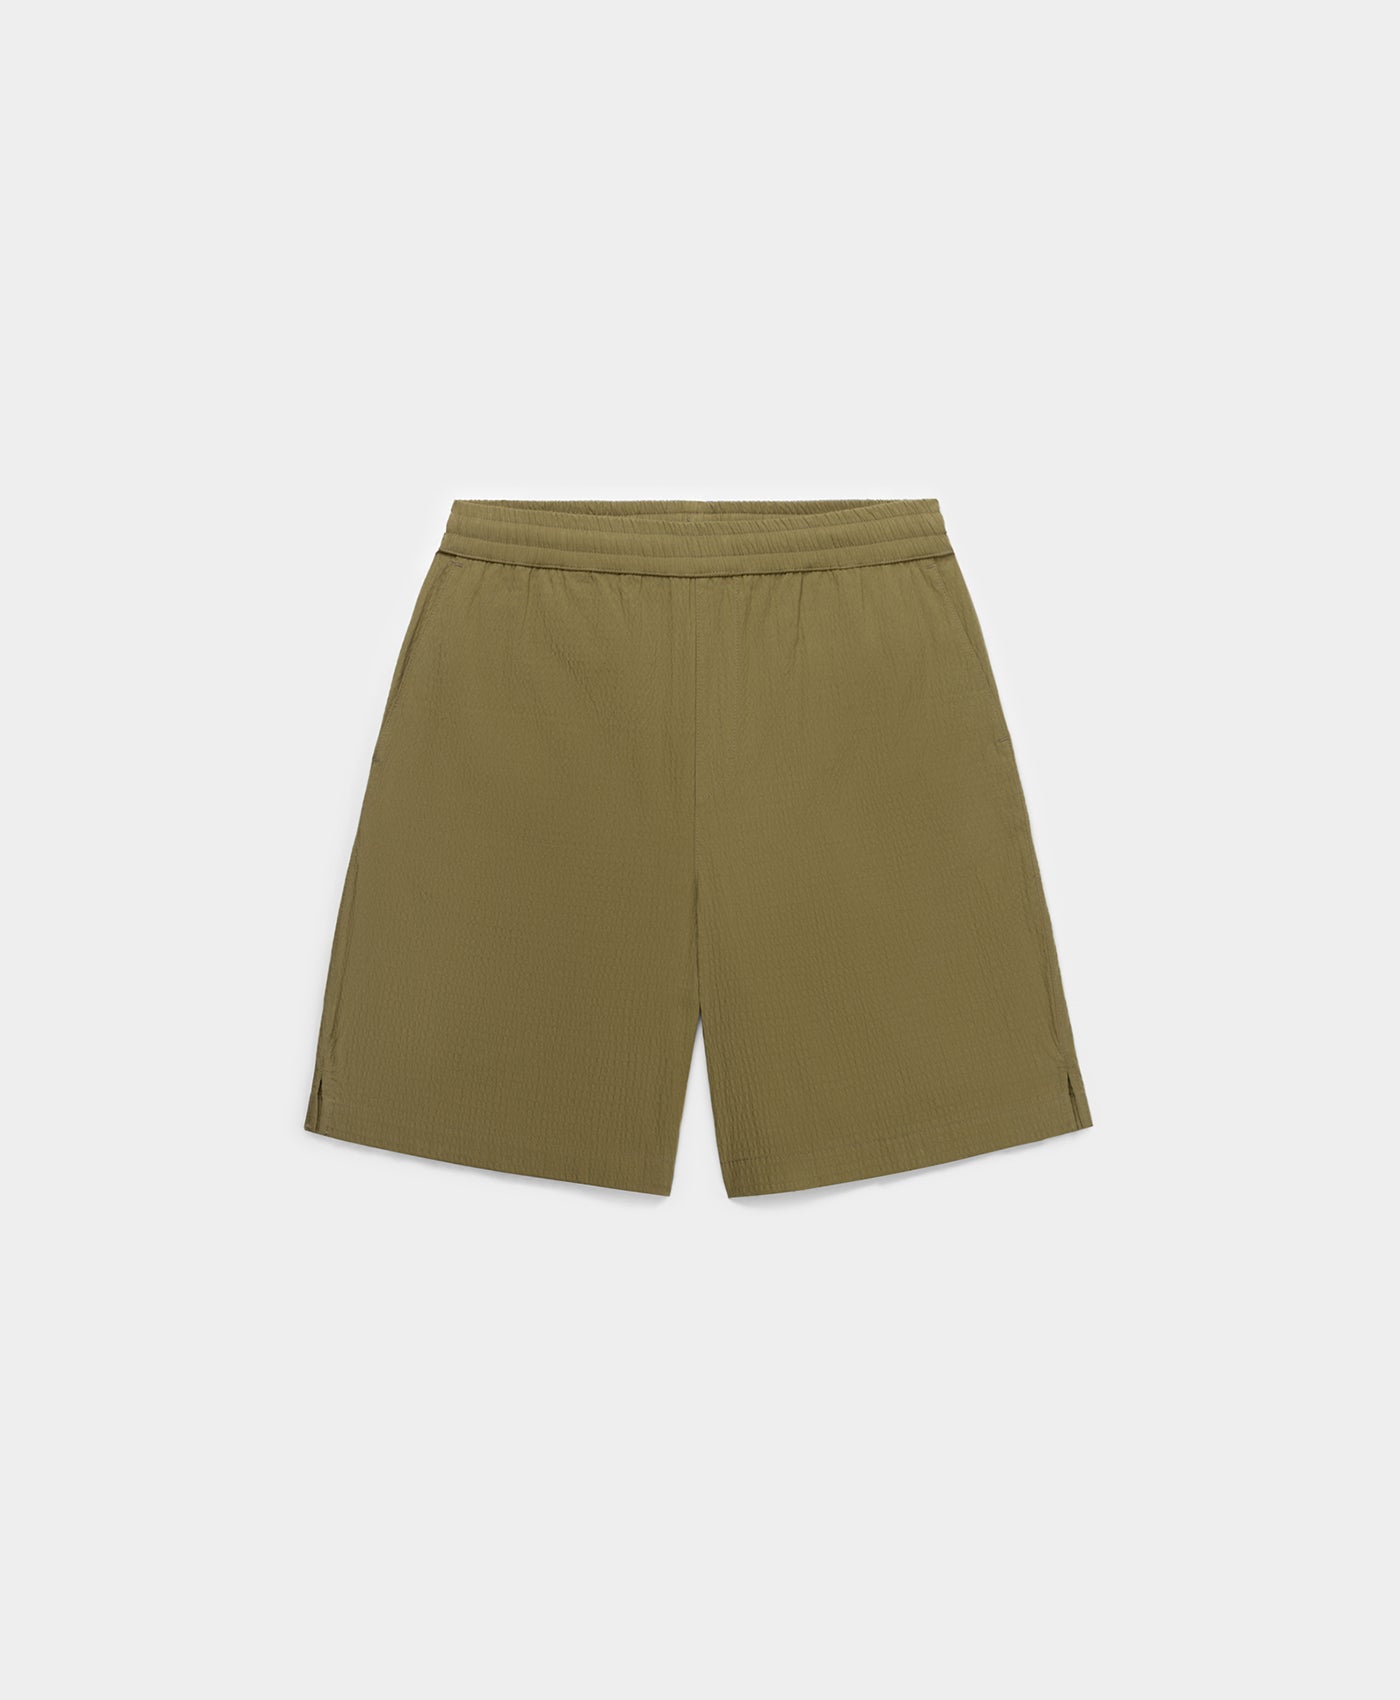 DP - Clover Green Pinira Shorts - Packshot - Front